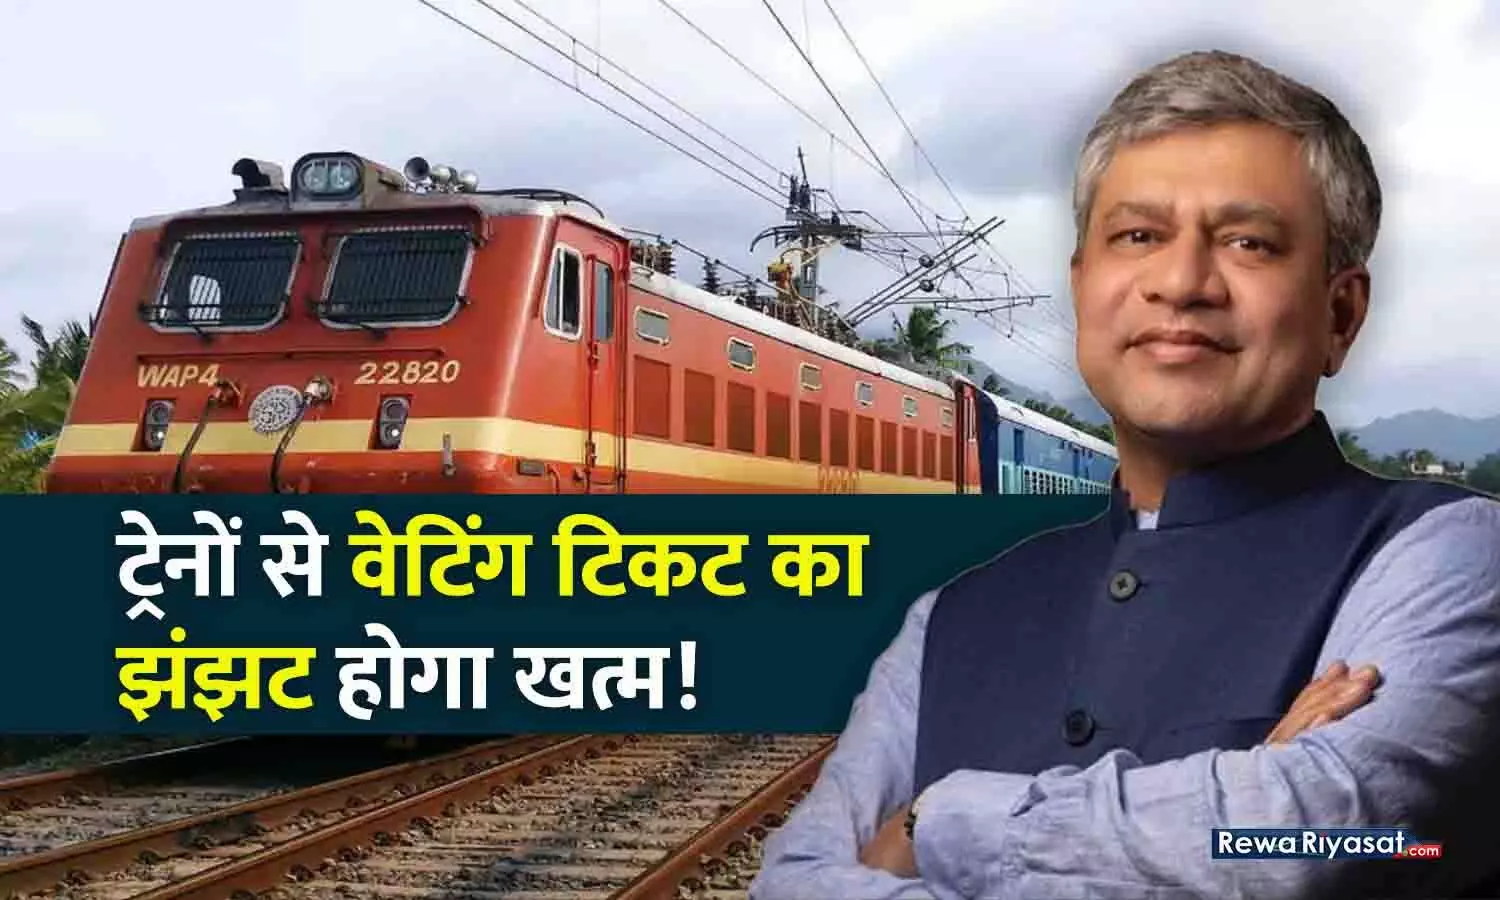 ट्रेनों से वेटिंग लिस्ट का पंगा खत्म होगा: रेलवे के इस प्लान से सबको मिलेगा कंफर्म टिकट, रेलमंत्री ने योजना बताई